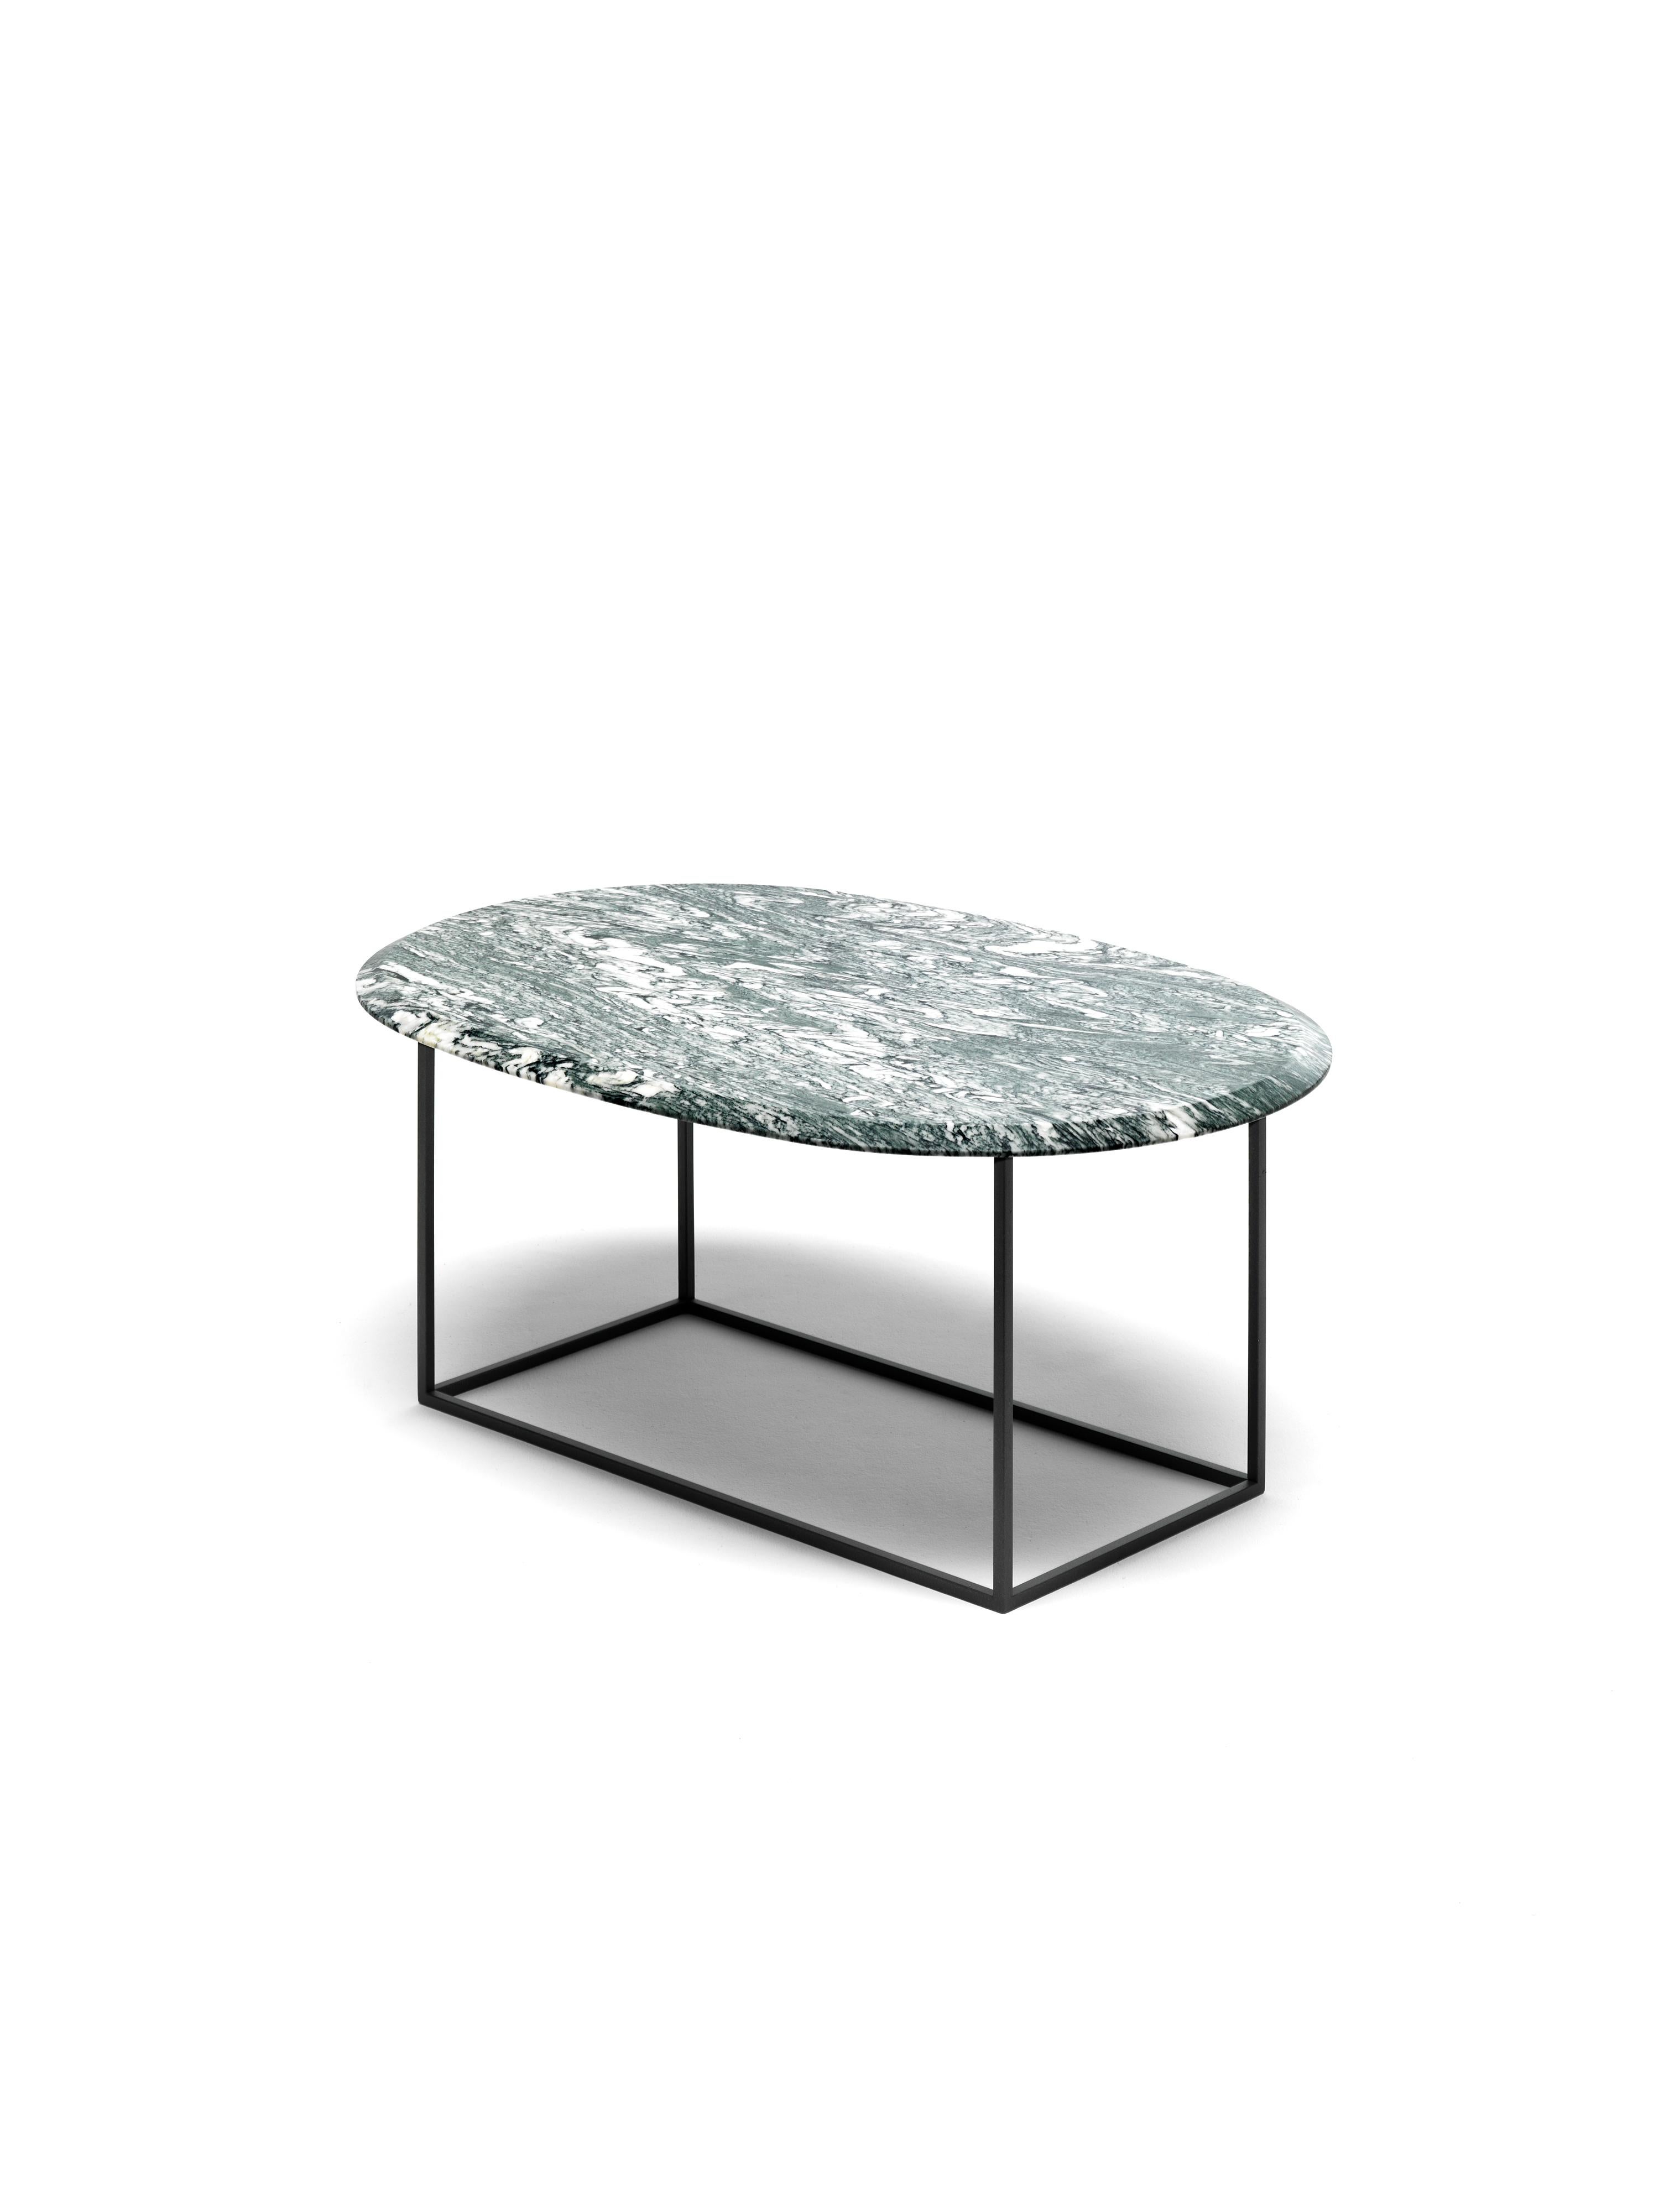 Notre table basse MT est à la fois simple et riche. La base est fabriquée à partir d'un tube métallique carré très fin, ce qui donne une structure géométrique propre et légère, tant sur le plan physique que visuel. Le plateau ovale est en marbre